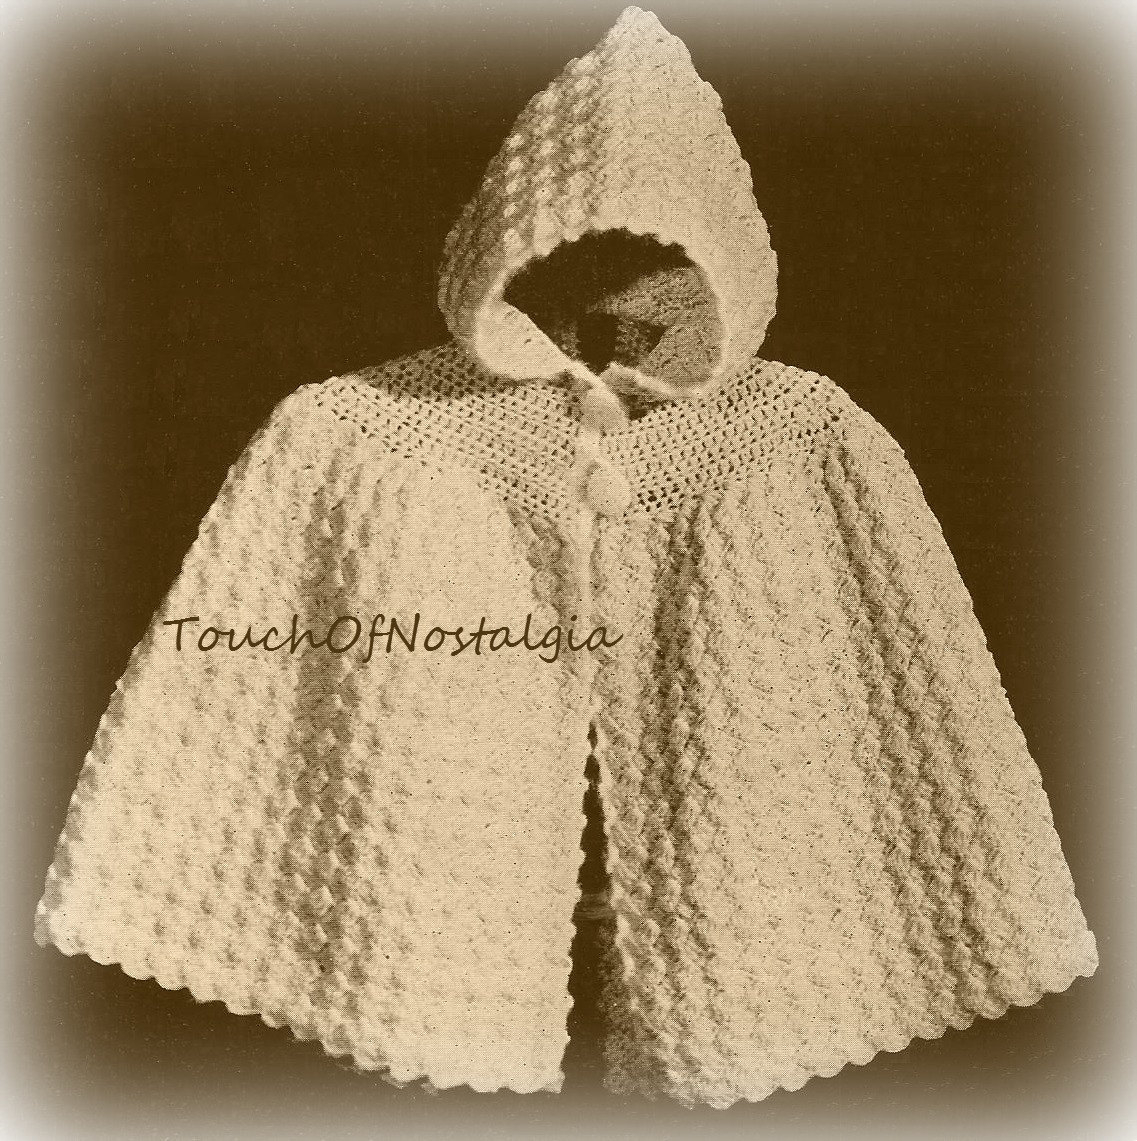 Crochet Cloak With Hood Pattern Crochet Ba Hooded Cape Vintage Crochet Pattern Cuddly Etsy